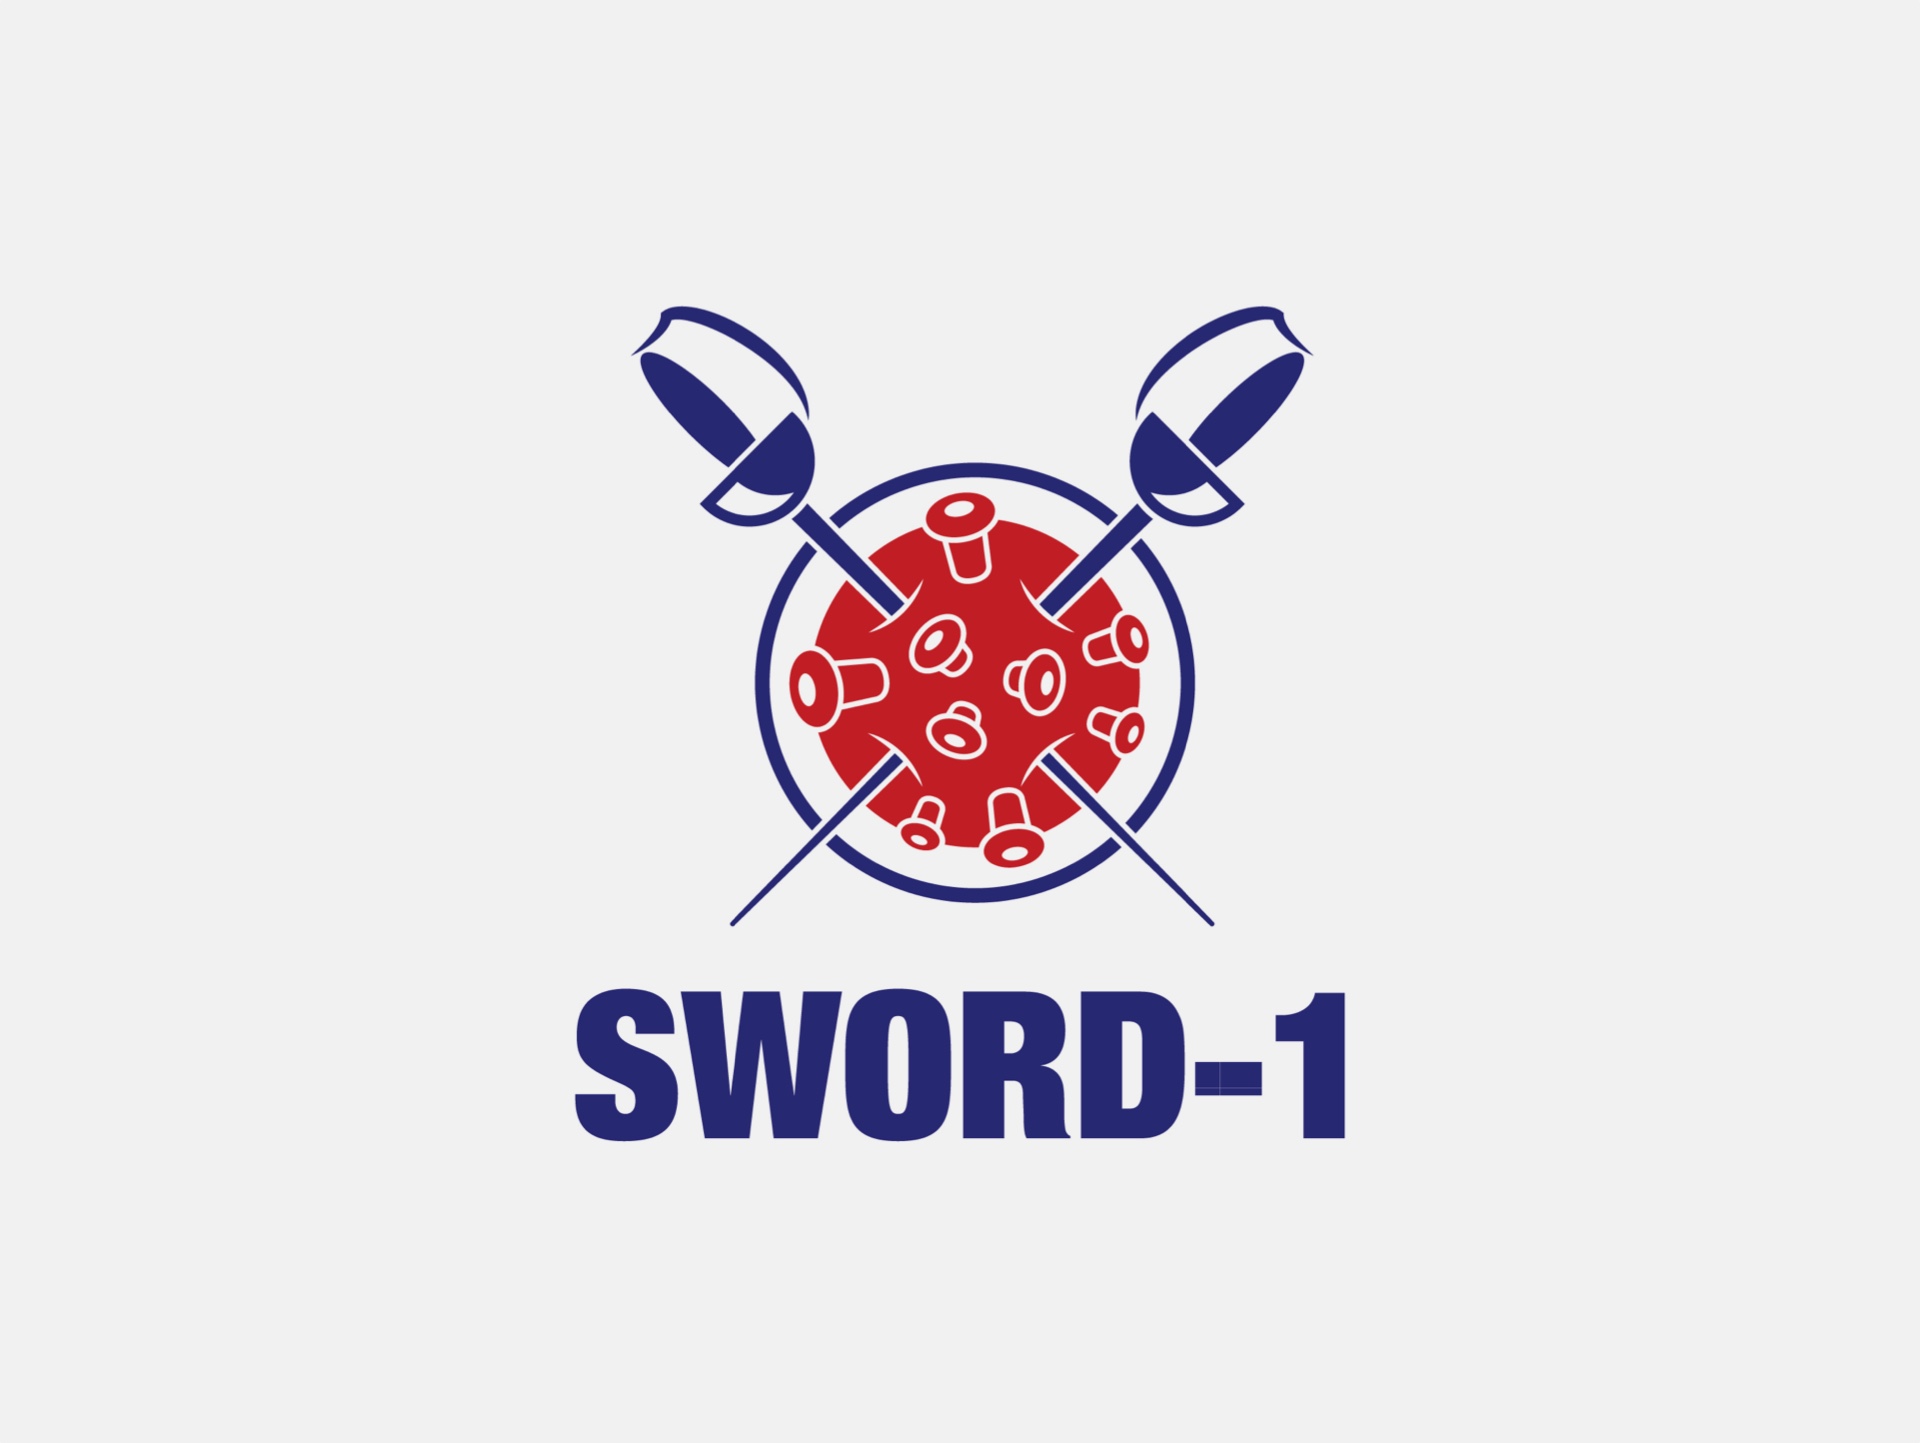 SWORD-1